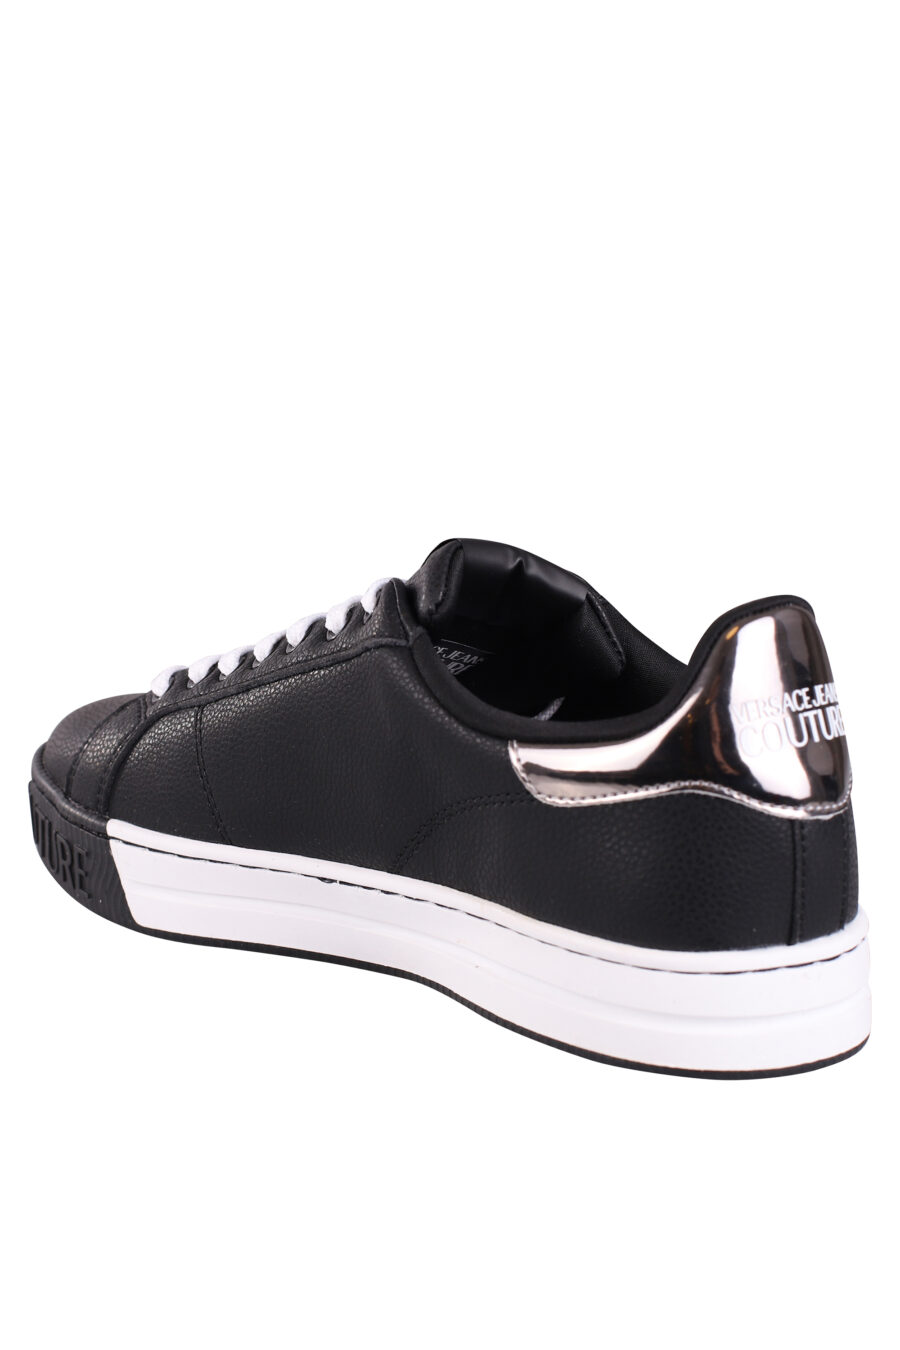 Zapatillas negras y plateadas con logo en semicirculo - IMG 9044